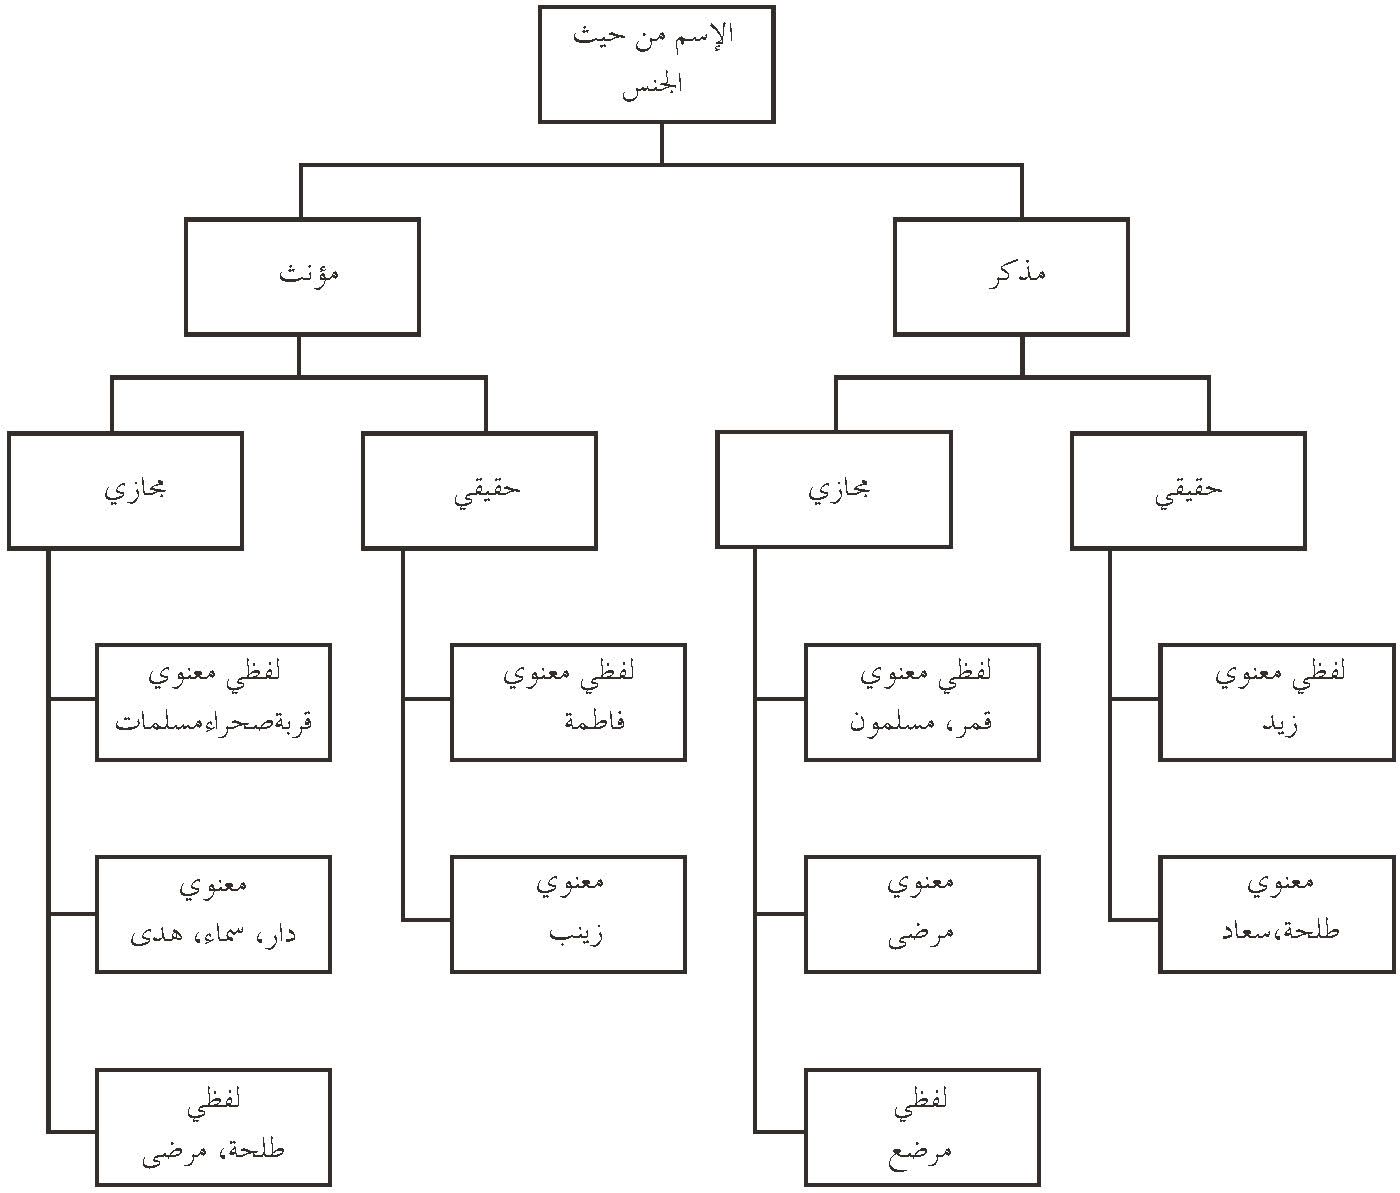 图1 阿拉伯语名词的性别划分